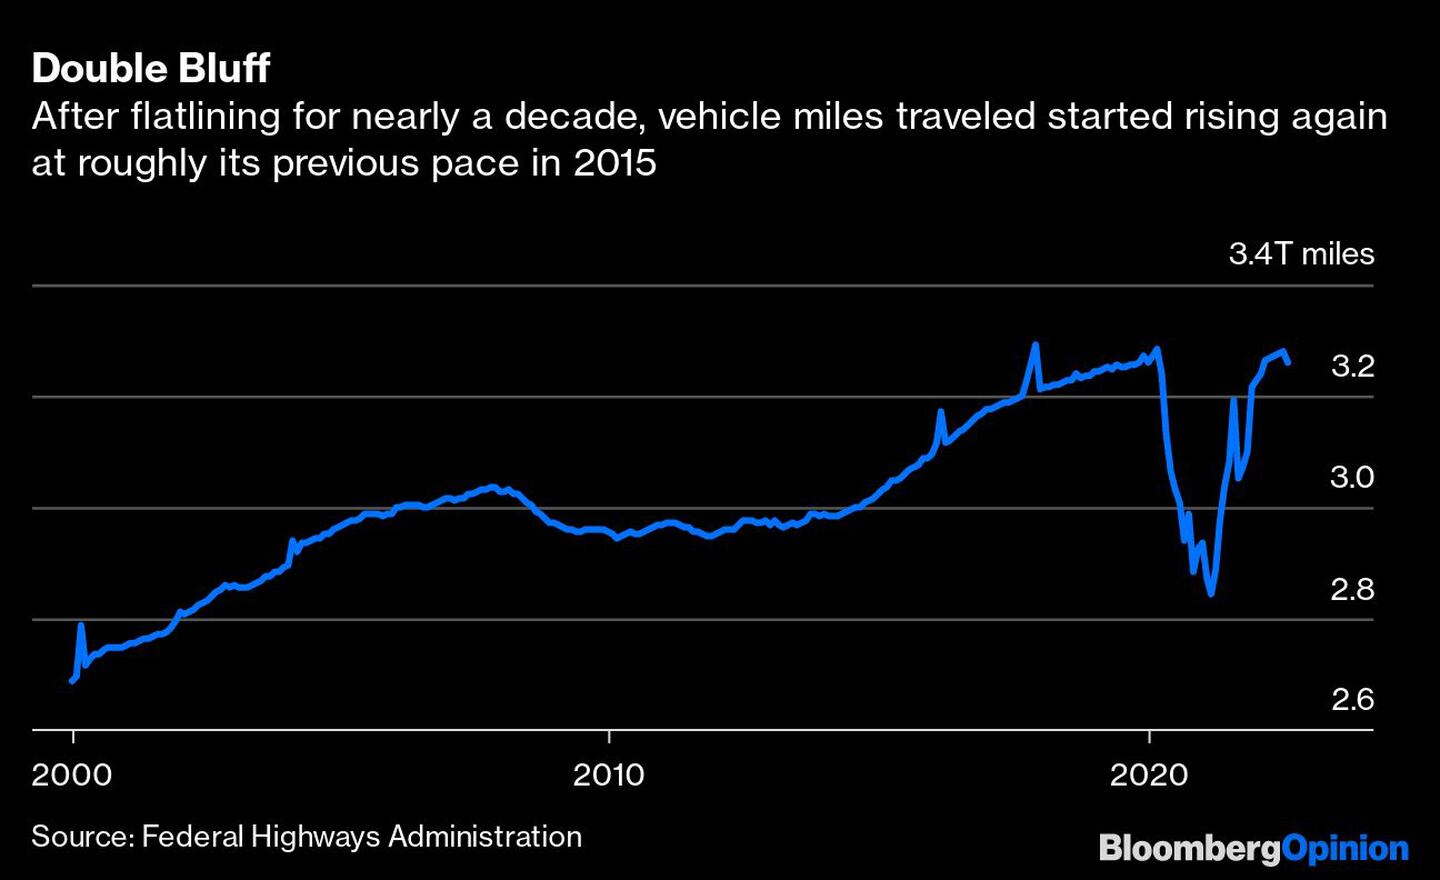  Tras un estancamiento de casi una década, los kilómetros recorridos volvieron a aumentar aproximadamente al ritmo anterior en 2015dfd